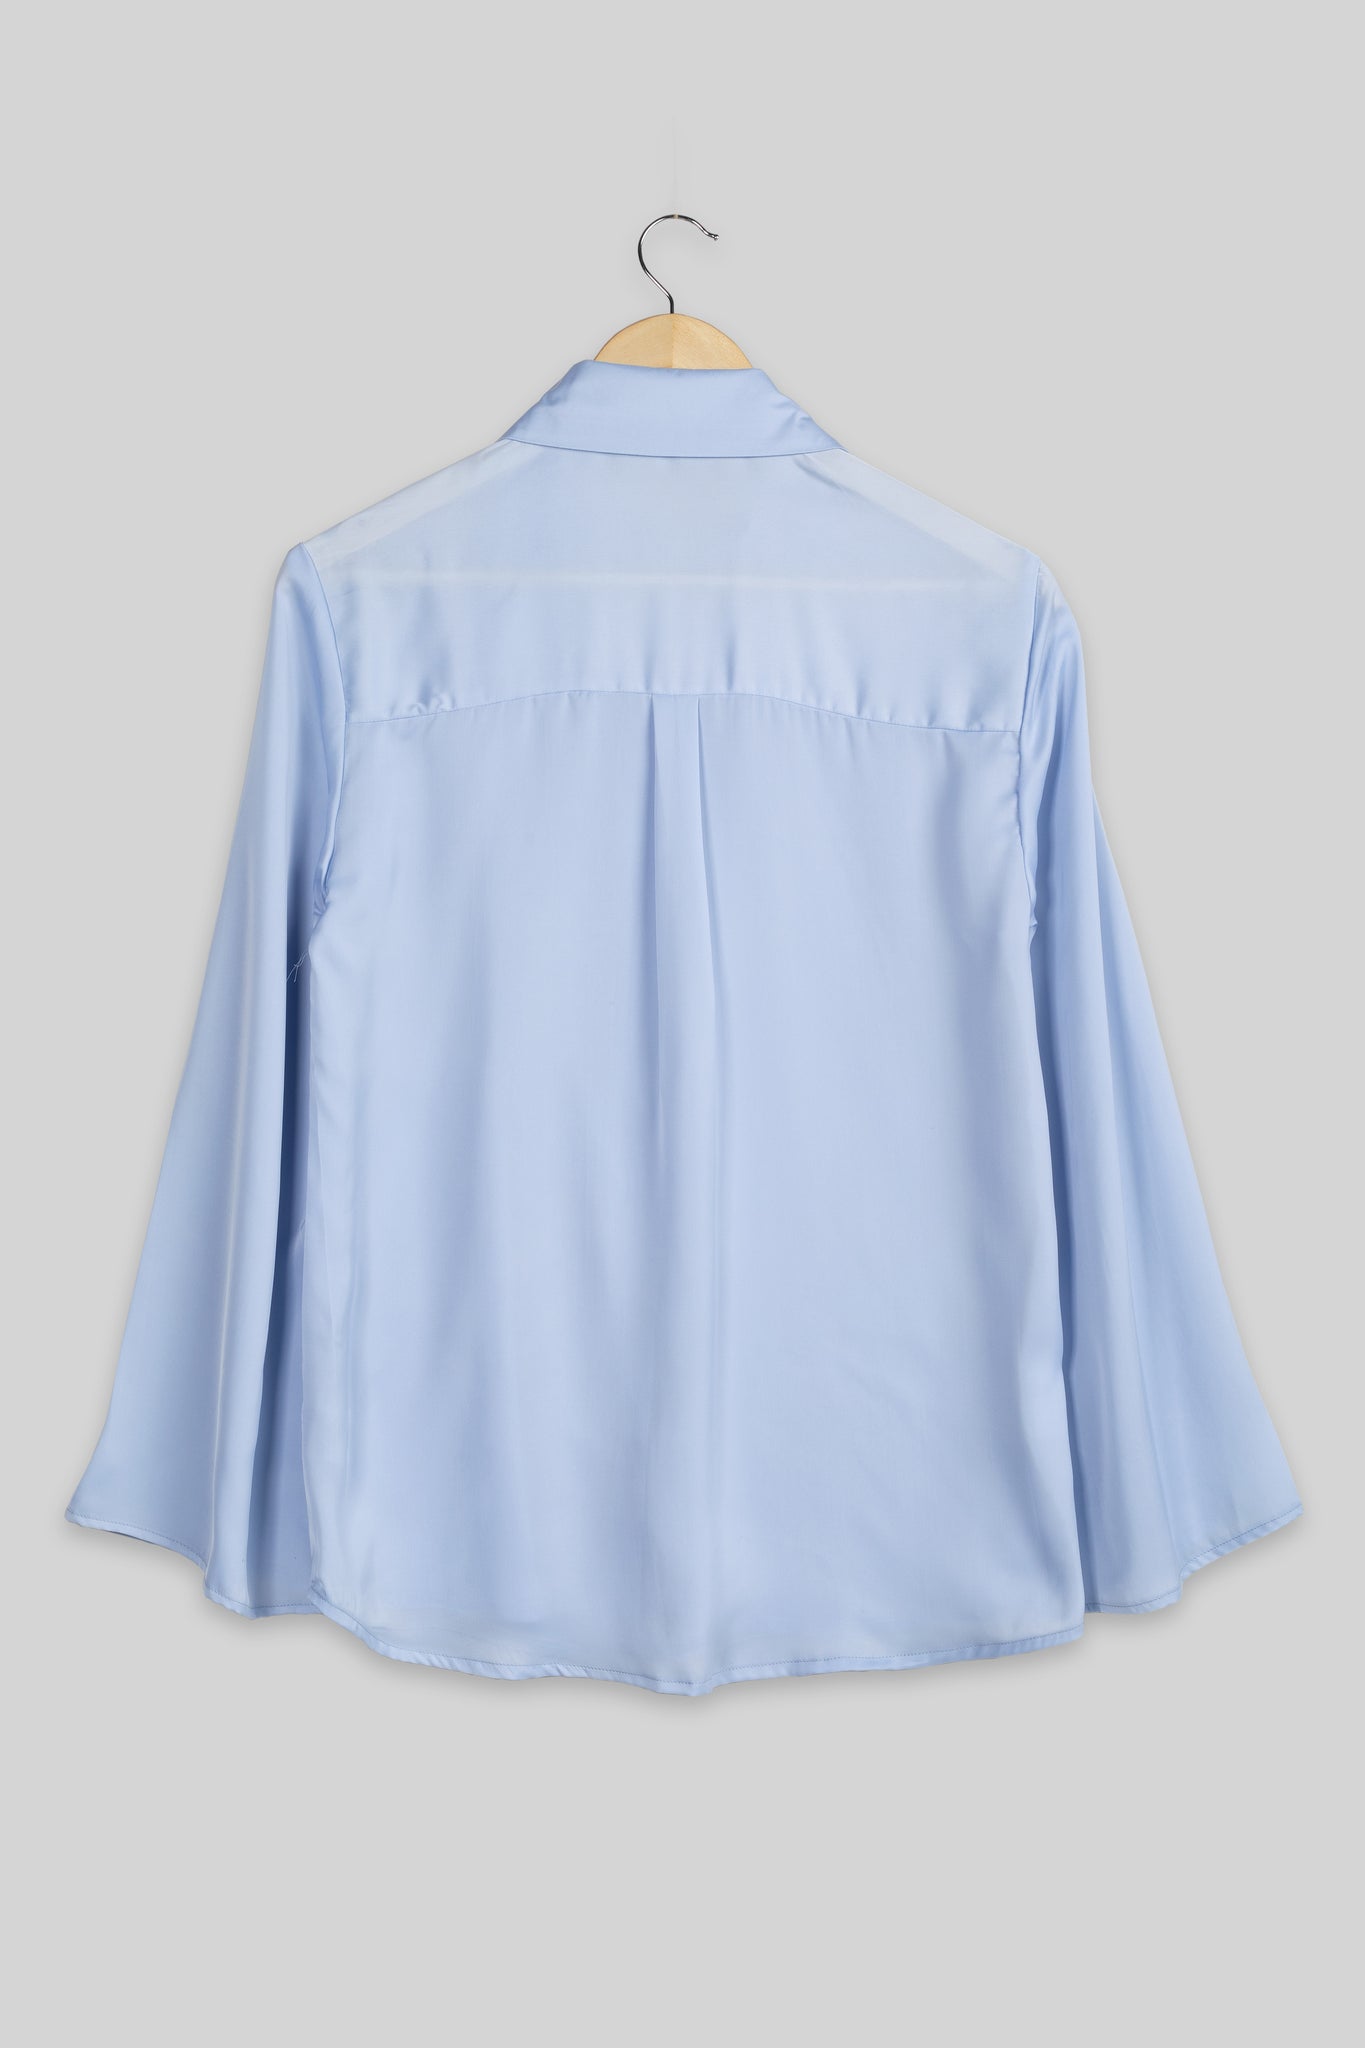 Zenith Bell Sleeve Shirt For Women